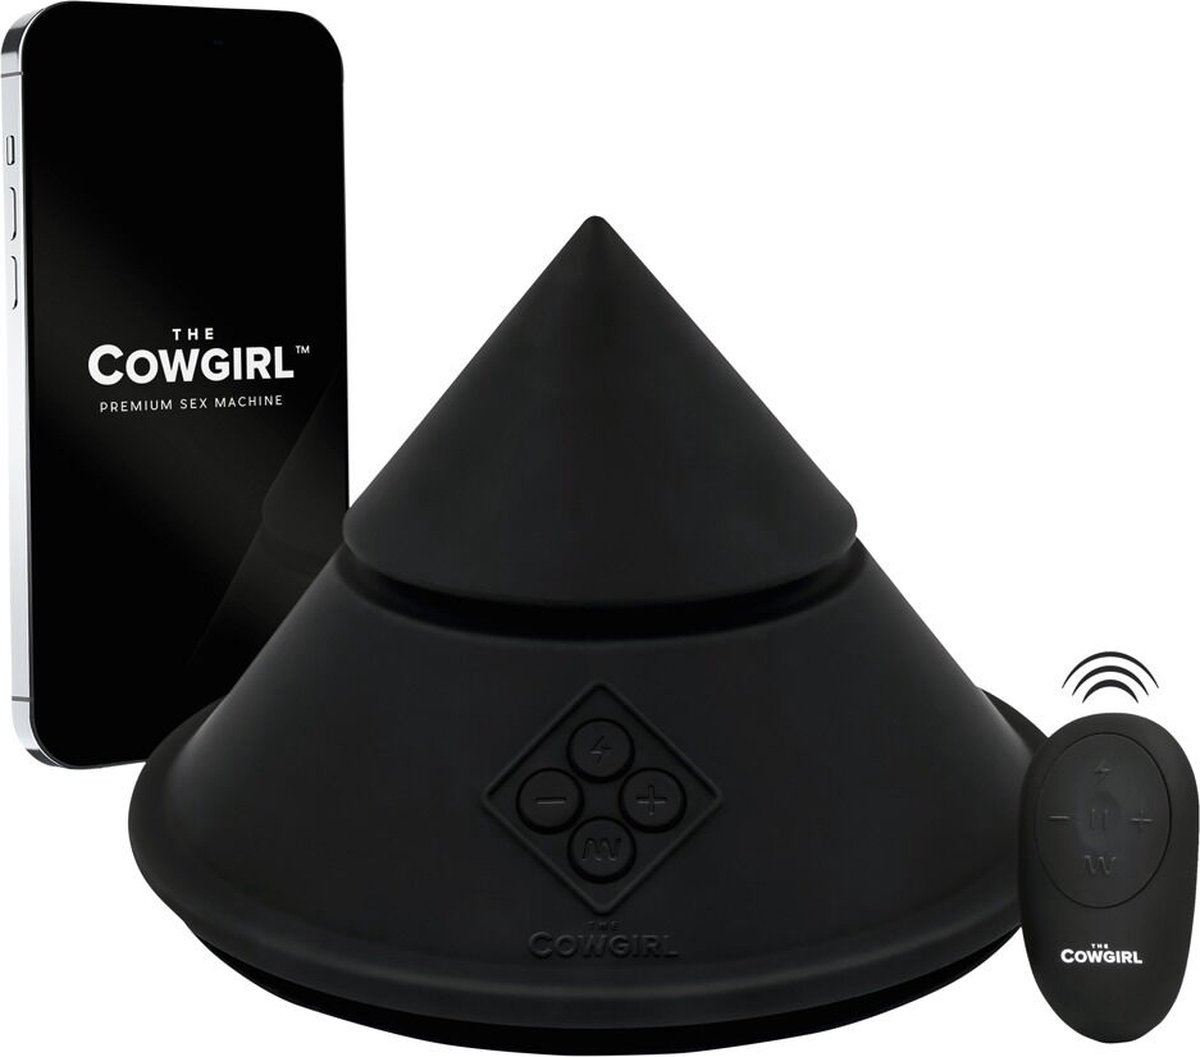 THE COWGIRL CONE - Seksmachine voor Perineum, Clitoris, Anus en Vagina Stimulatie - Met Interactieve Webcamfunctie - Bediening via Smartphone-app via Bluetooth vanal Elke Plaats